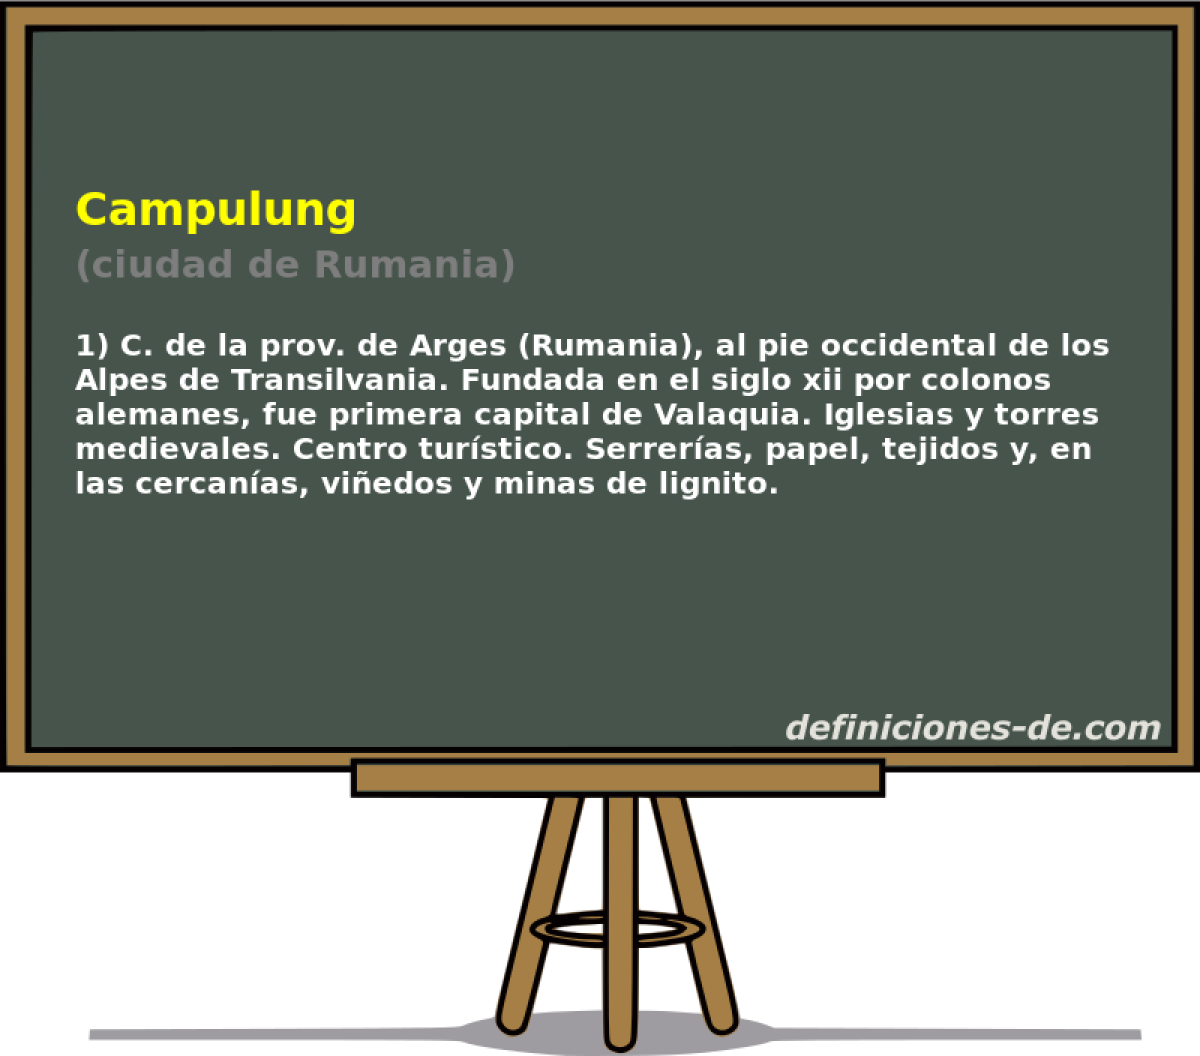 Campulung (ciudad de Rumania)